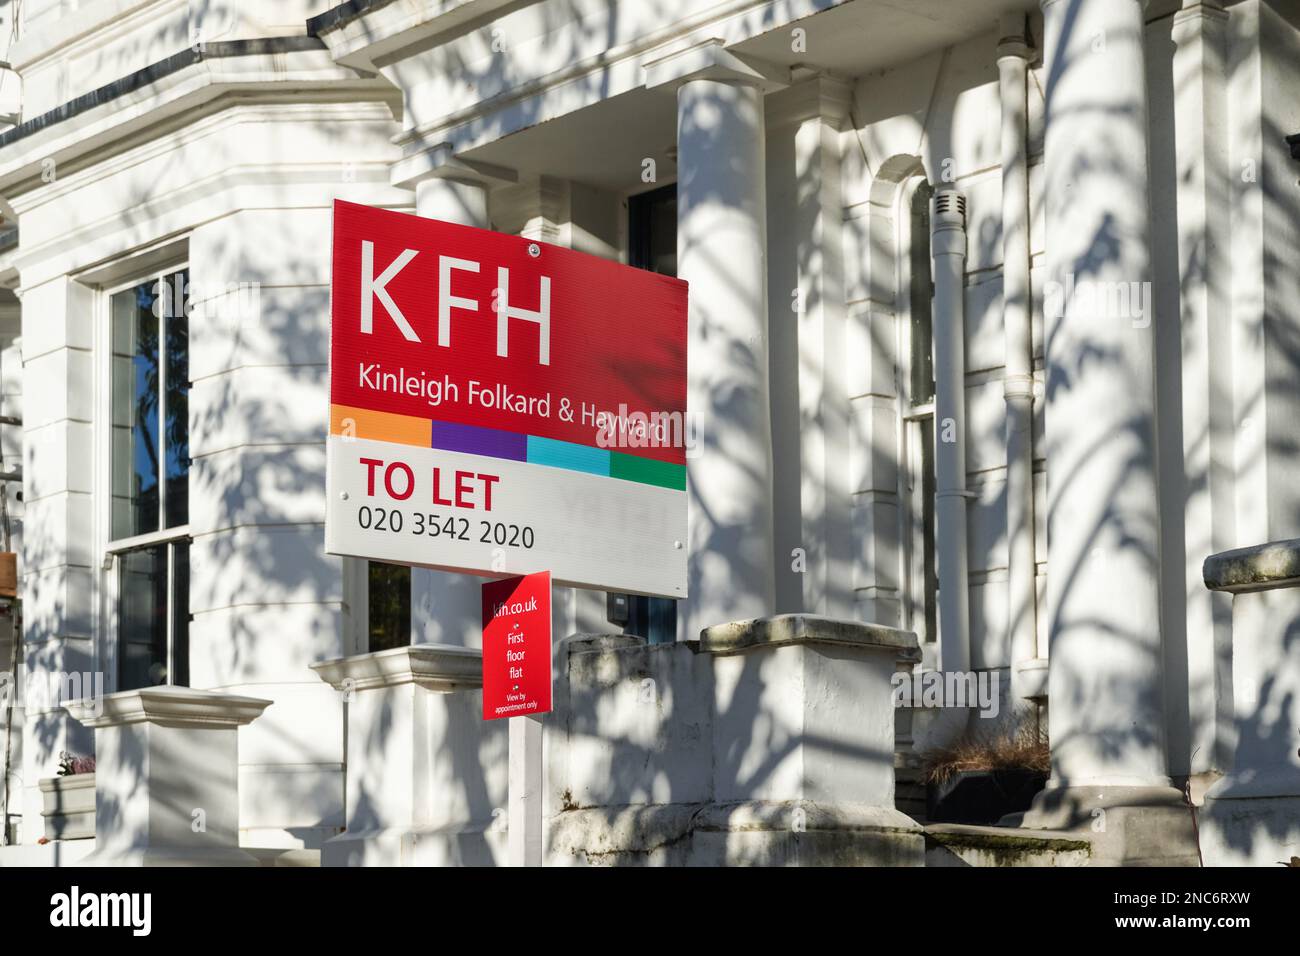 Signe de l'immobilier à laisser dehors maisons mitoyennes à Kensington Londres, Angleterre Royaume-Uni Banque D'Images